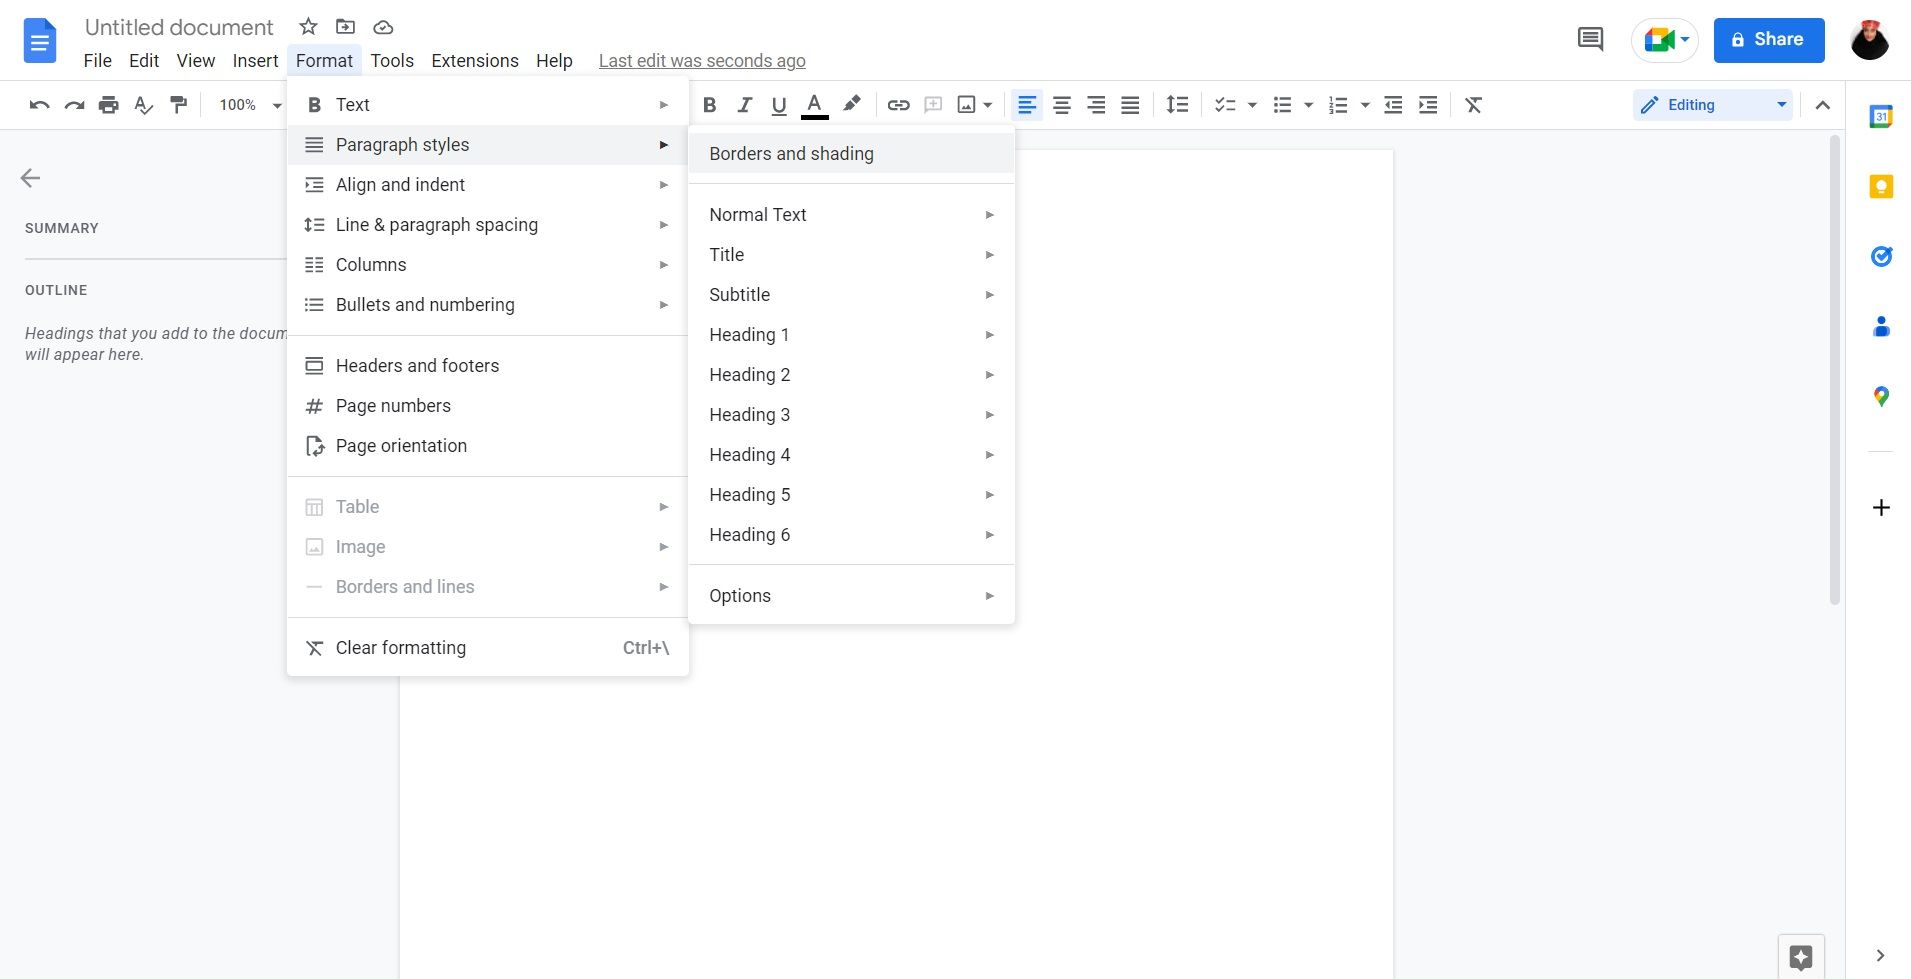 Format menu in Google Docs